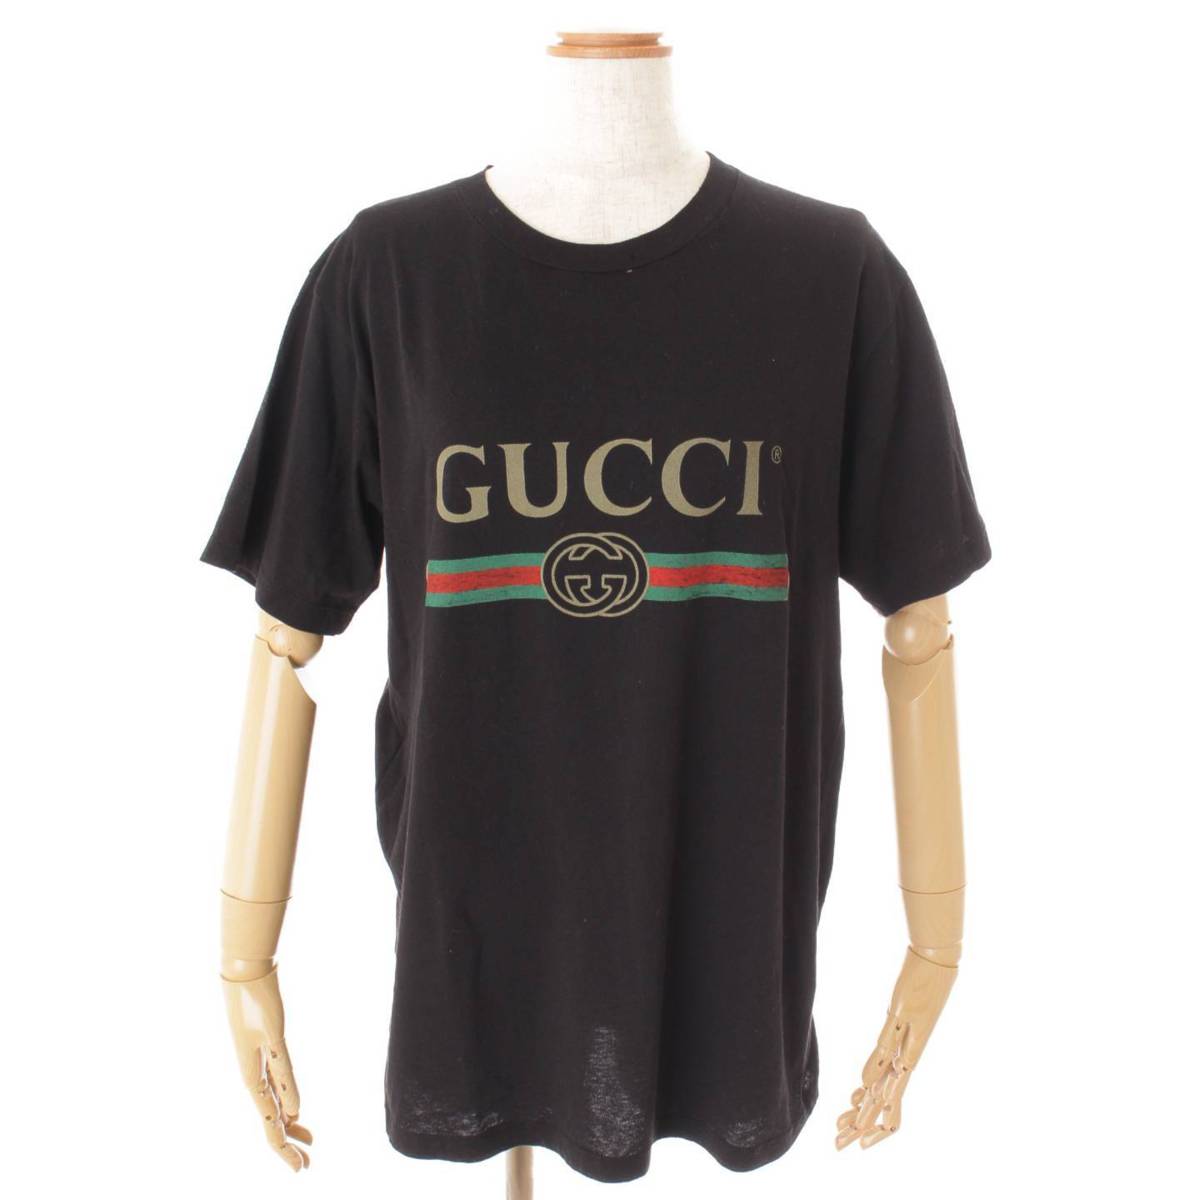 グッチ(Gucci) ロゴ オーバーサイズ コットン Tシャツ フラワー刺繍 457095 ブラック XS